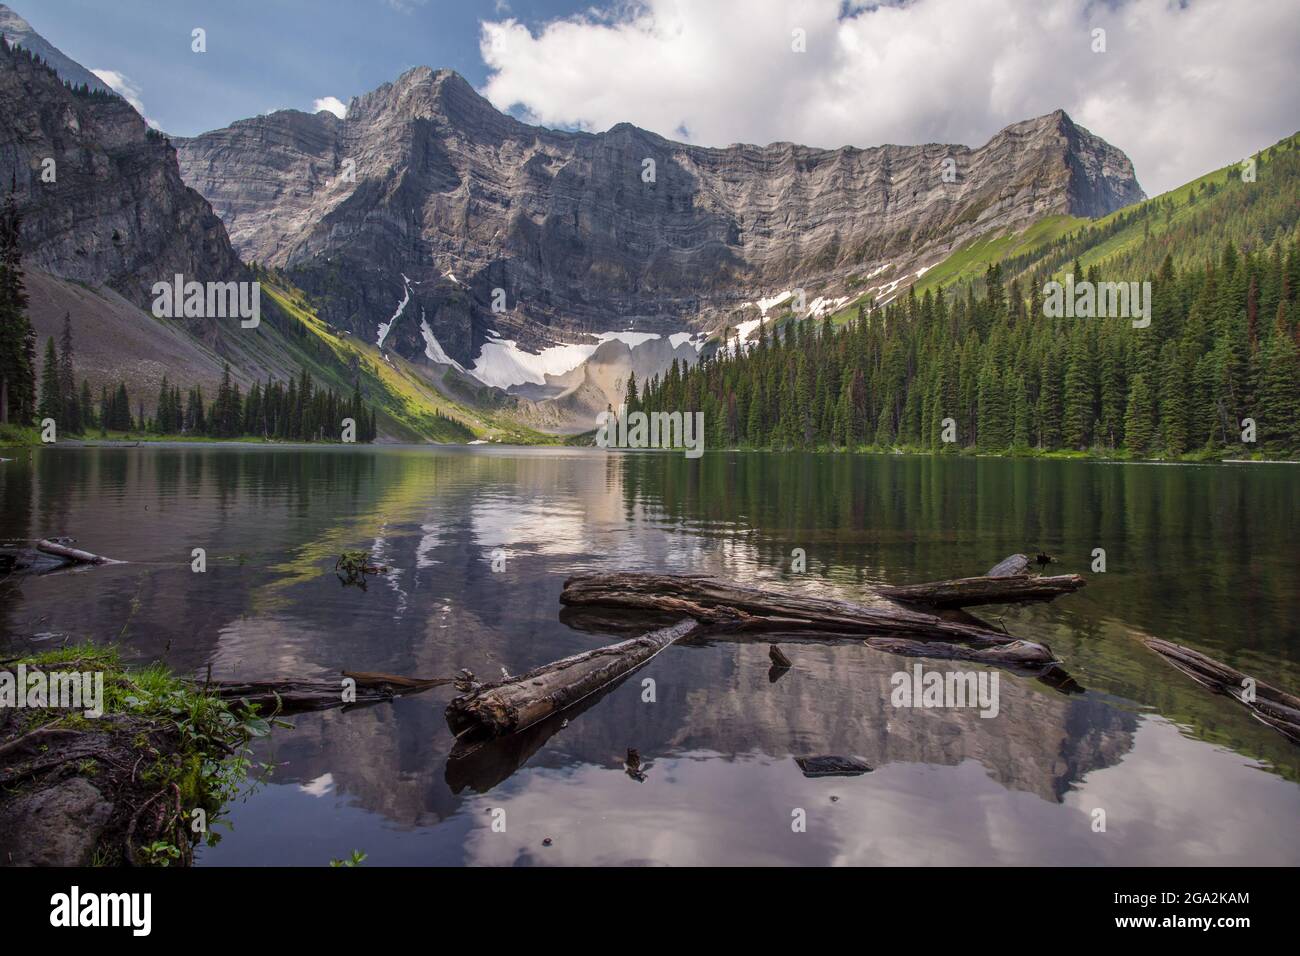 Lac Rawson avec une image miroir de la forêt et des montagnes dans l'eau, parc provincial Kananaskis; Alberta, Canada Banque D'Images